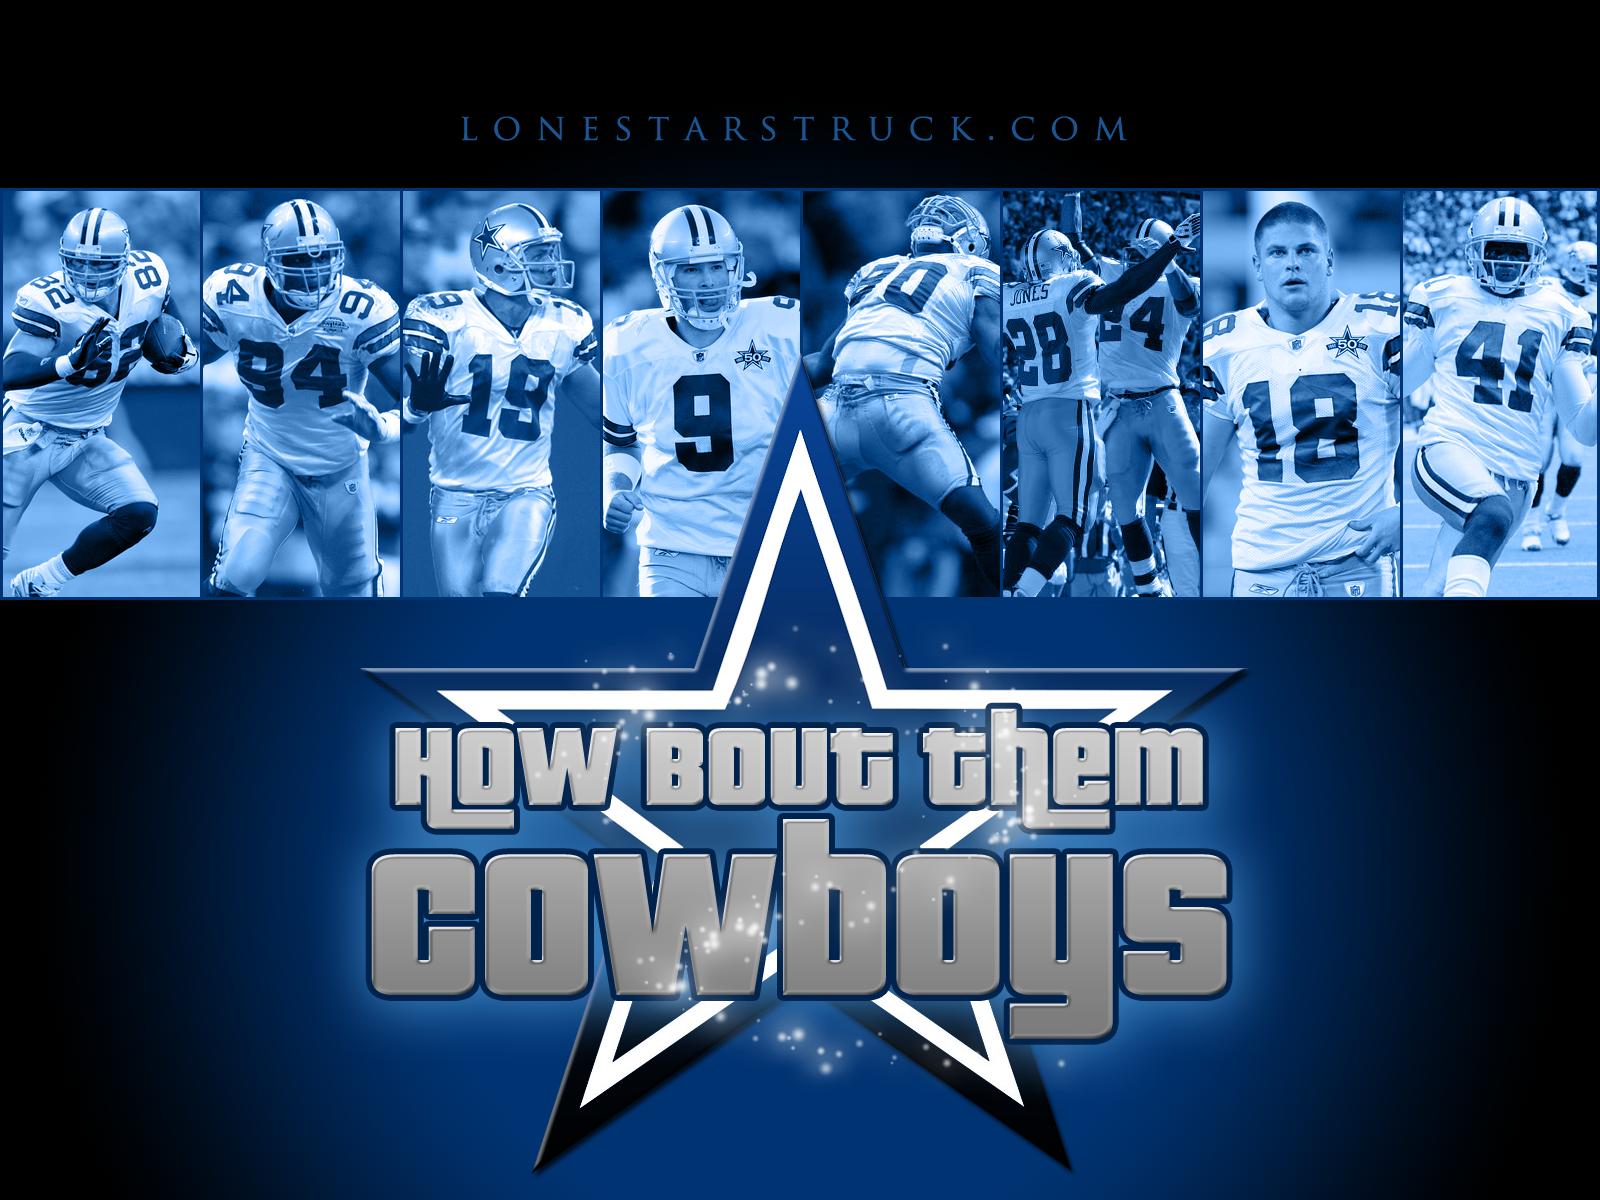 Free Dallas Cowboys desktop wallpaper Dallas Cowboys wallpapers 1600x1200